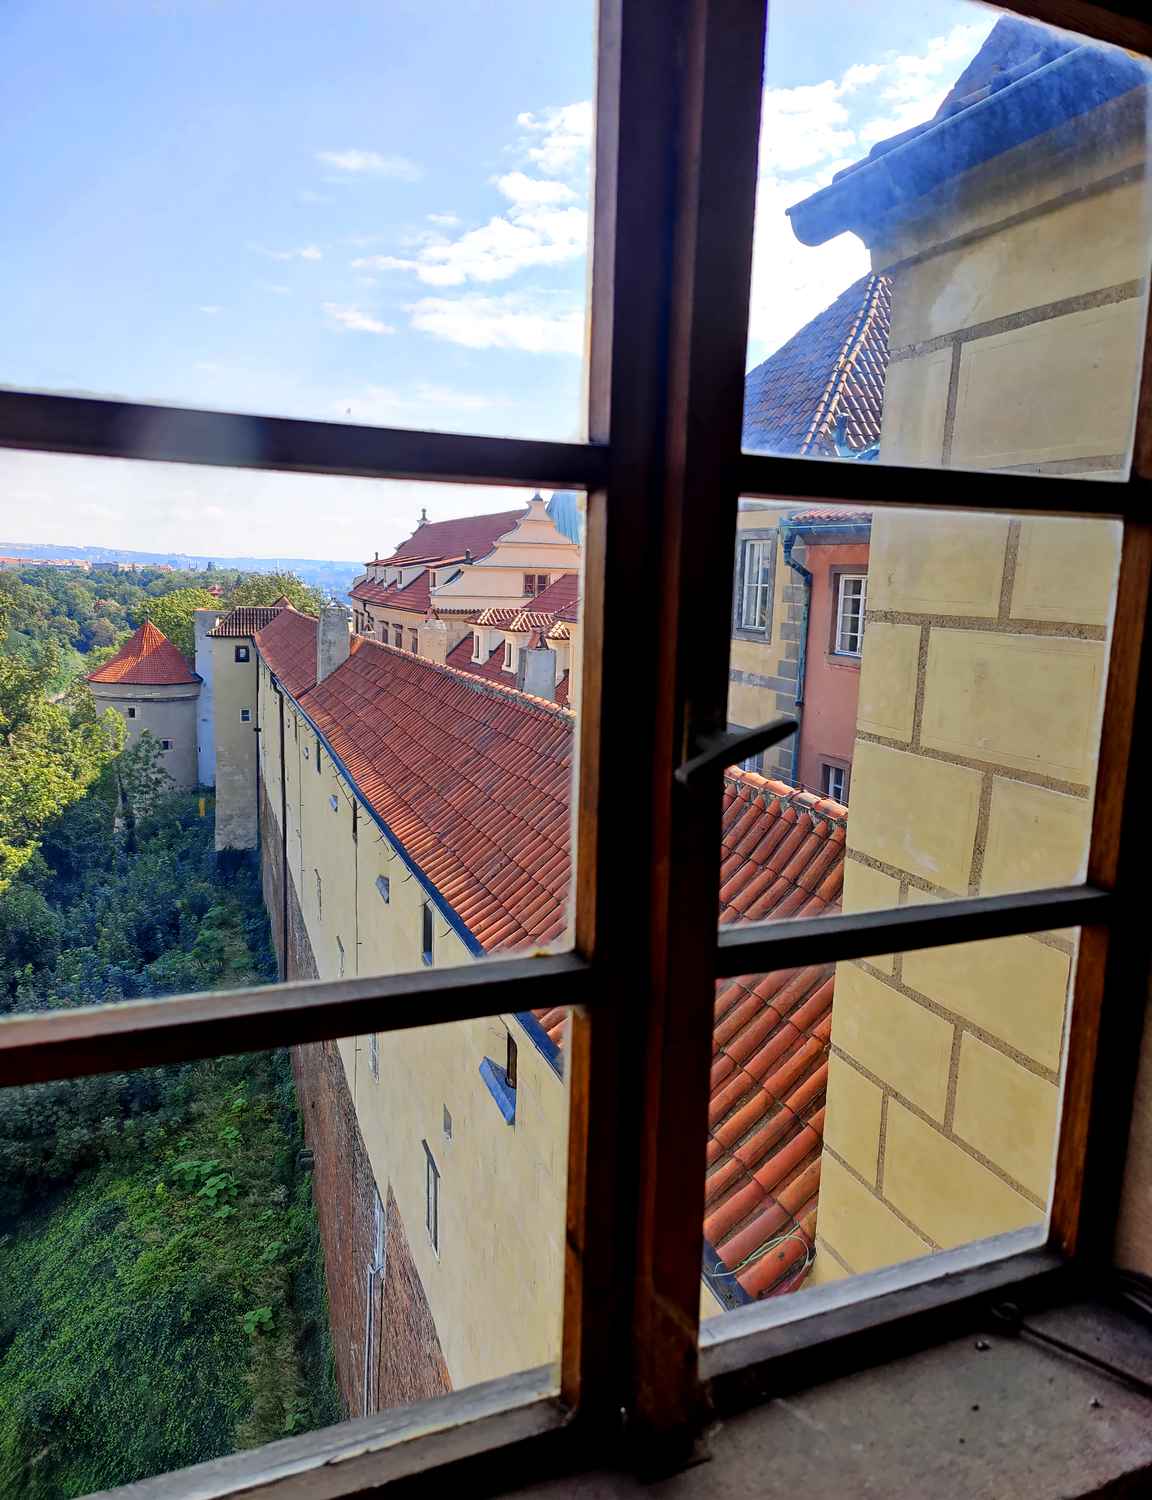 Dalibornin torni on Prahan linnan eteläisessä päädyssä.